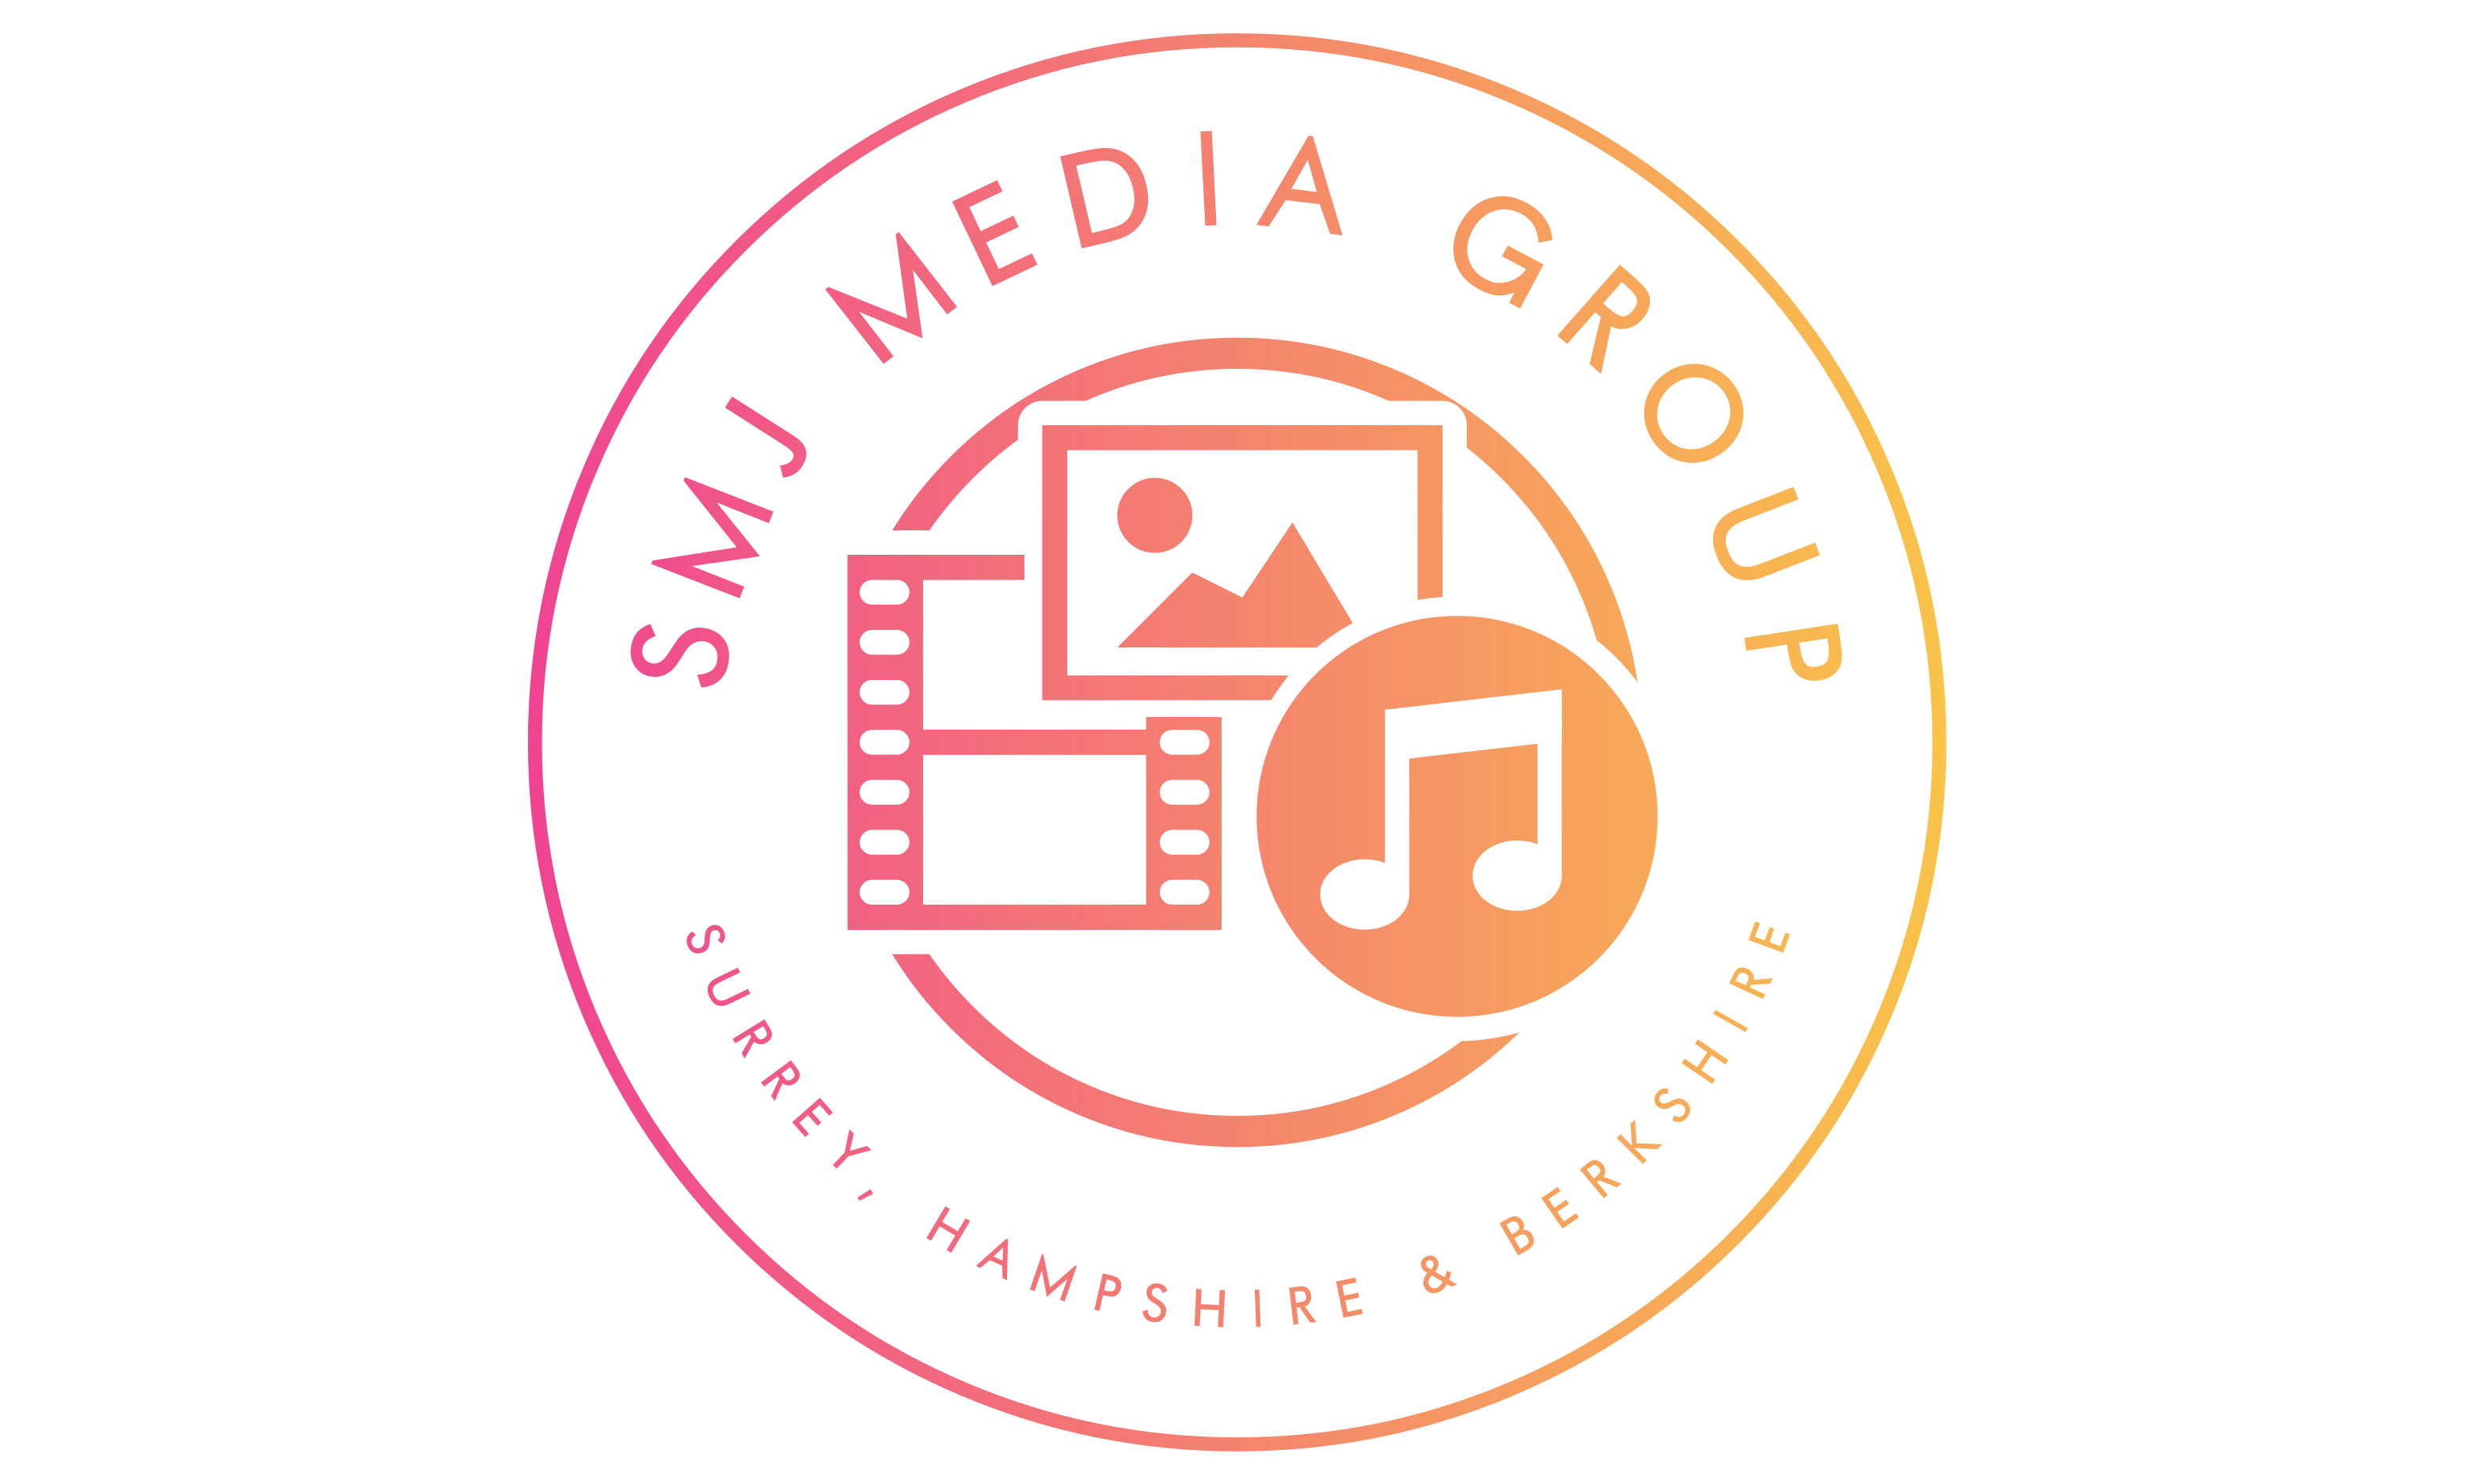 SMJ Media Group - Community Interest Company